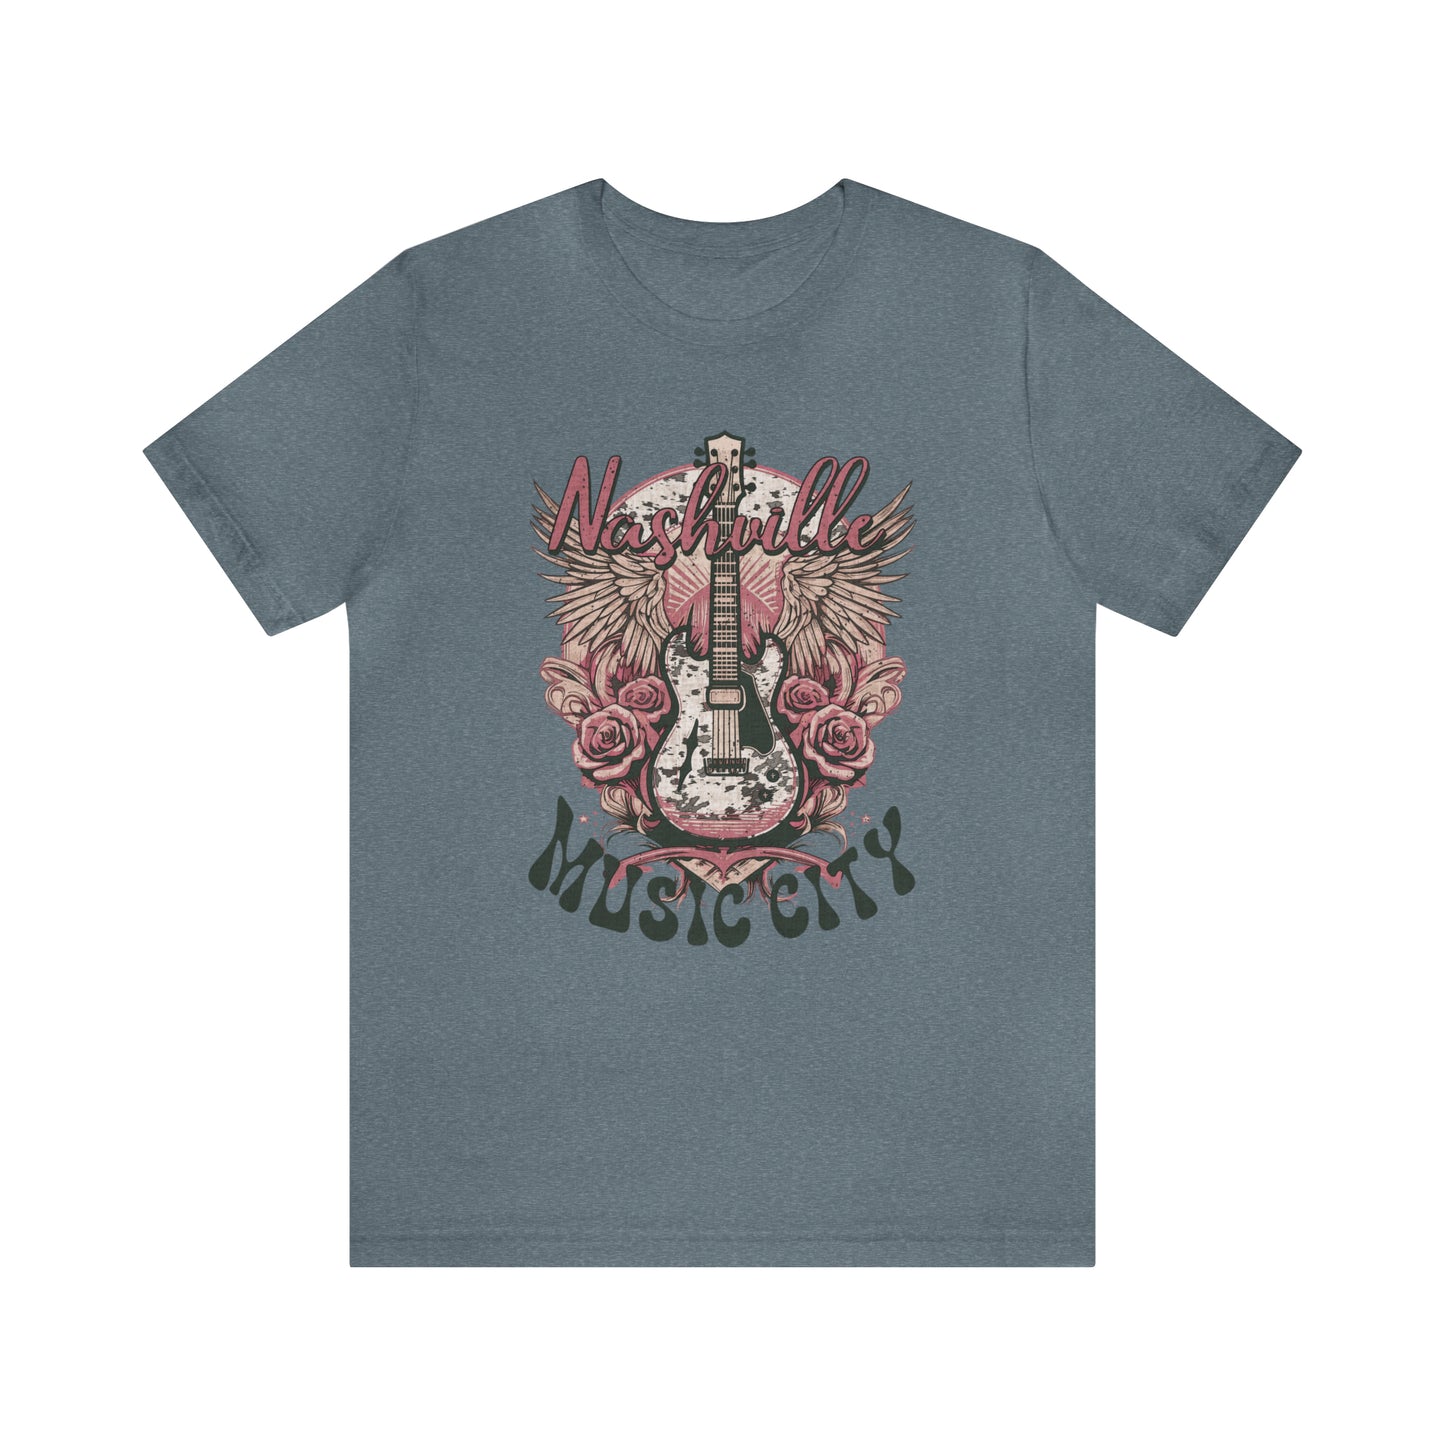 Nashville Music City - Jersey Short Sleeve T-Shirt